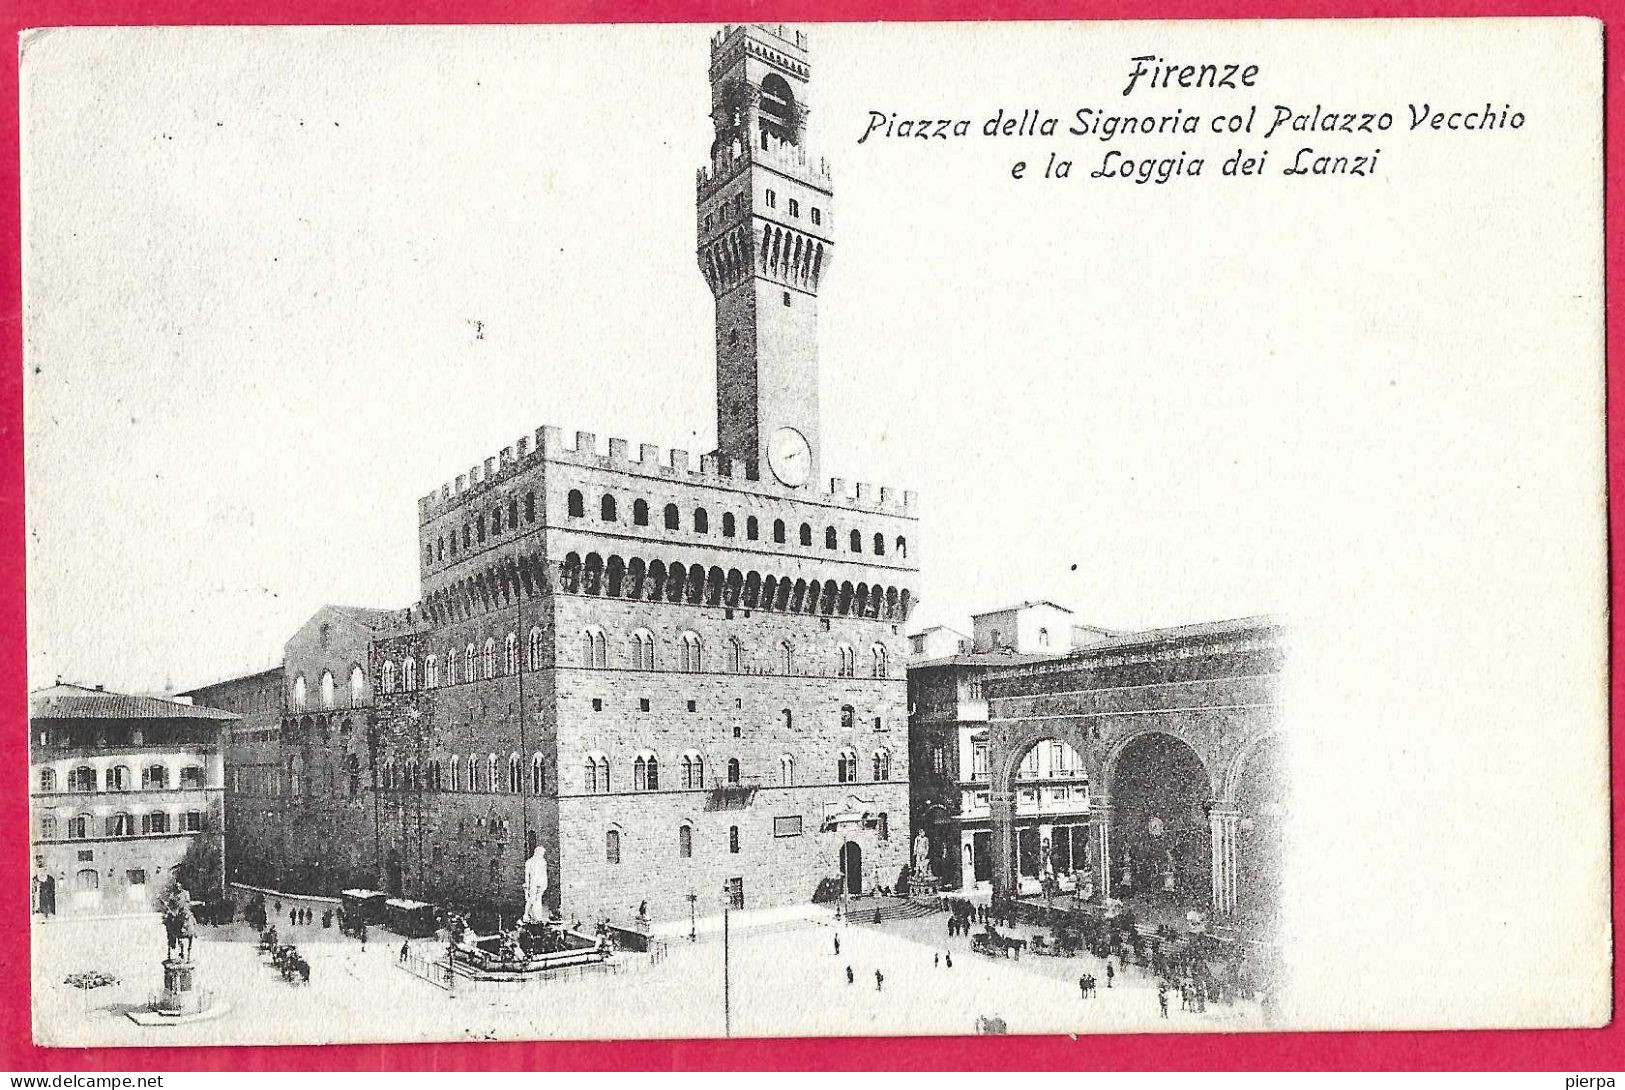 FIRENZE - PIAZZA DELLA SIGNORIA E PALAZZO VECCHIO - FORMATO PICCOLO - EDIZ. GIUSTI FIRENZE - VIAGGIATA 1908 - Firenze